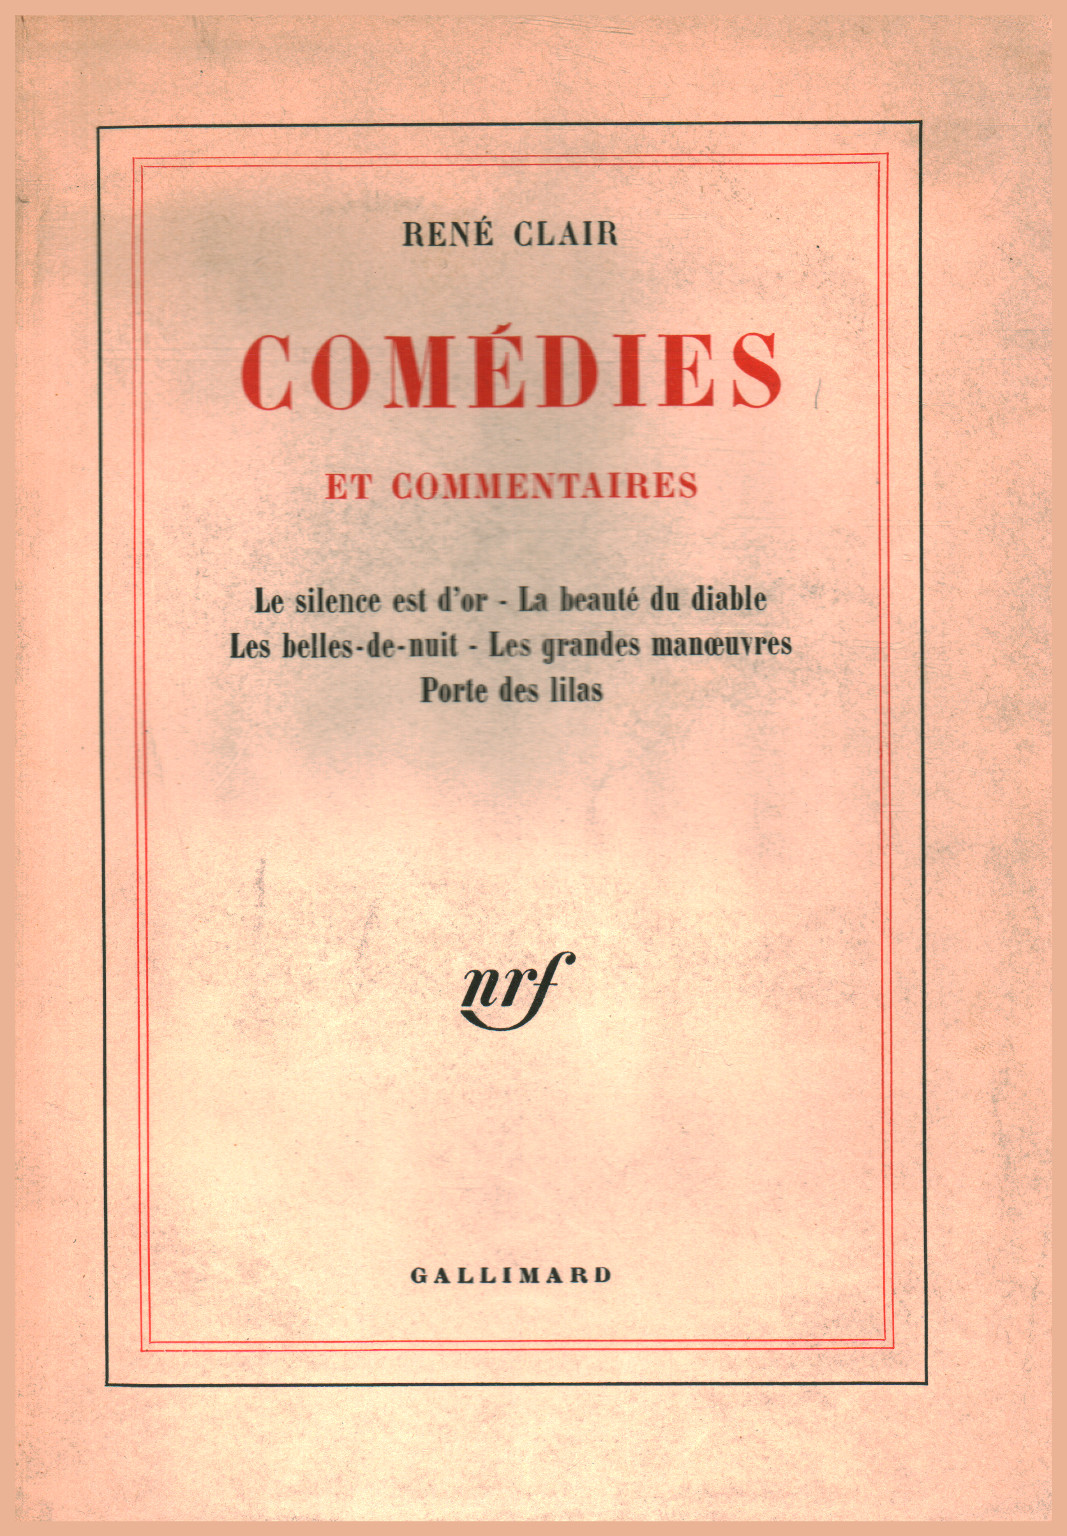 Comédies et Commentaires, s.a.